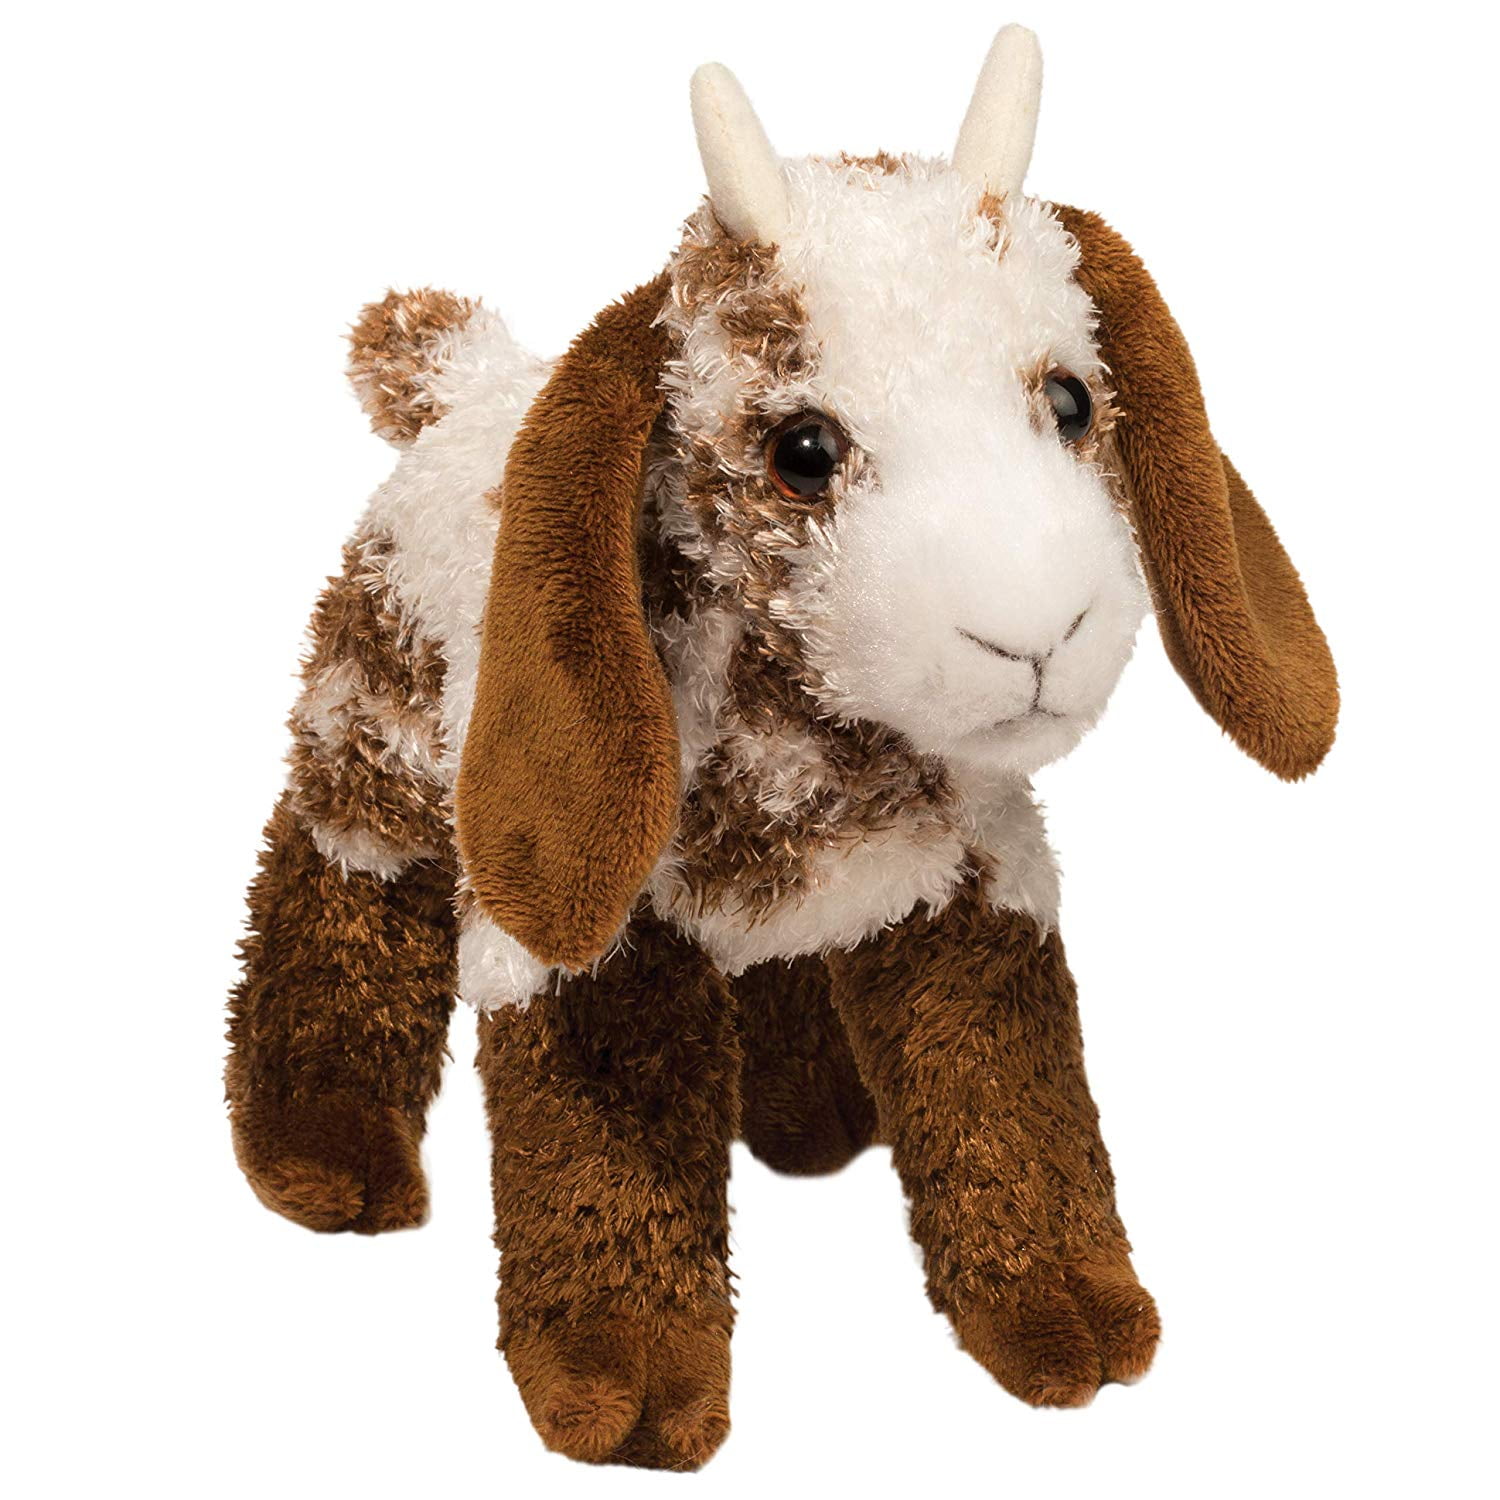 22 x 22.5 x 9" Melissa  Doug Standing Lifelike Plush Goat Stuffed Animal 